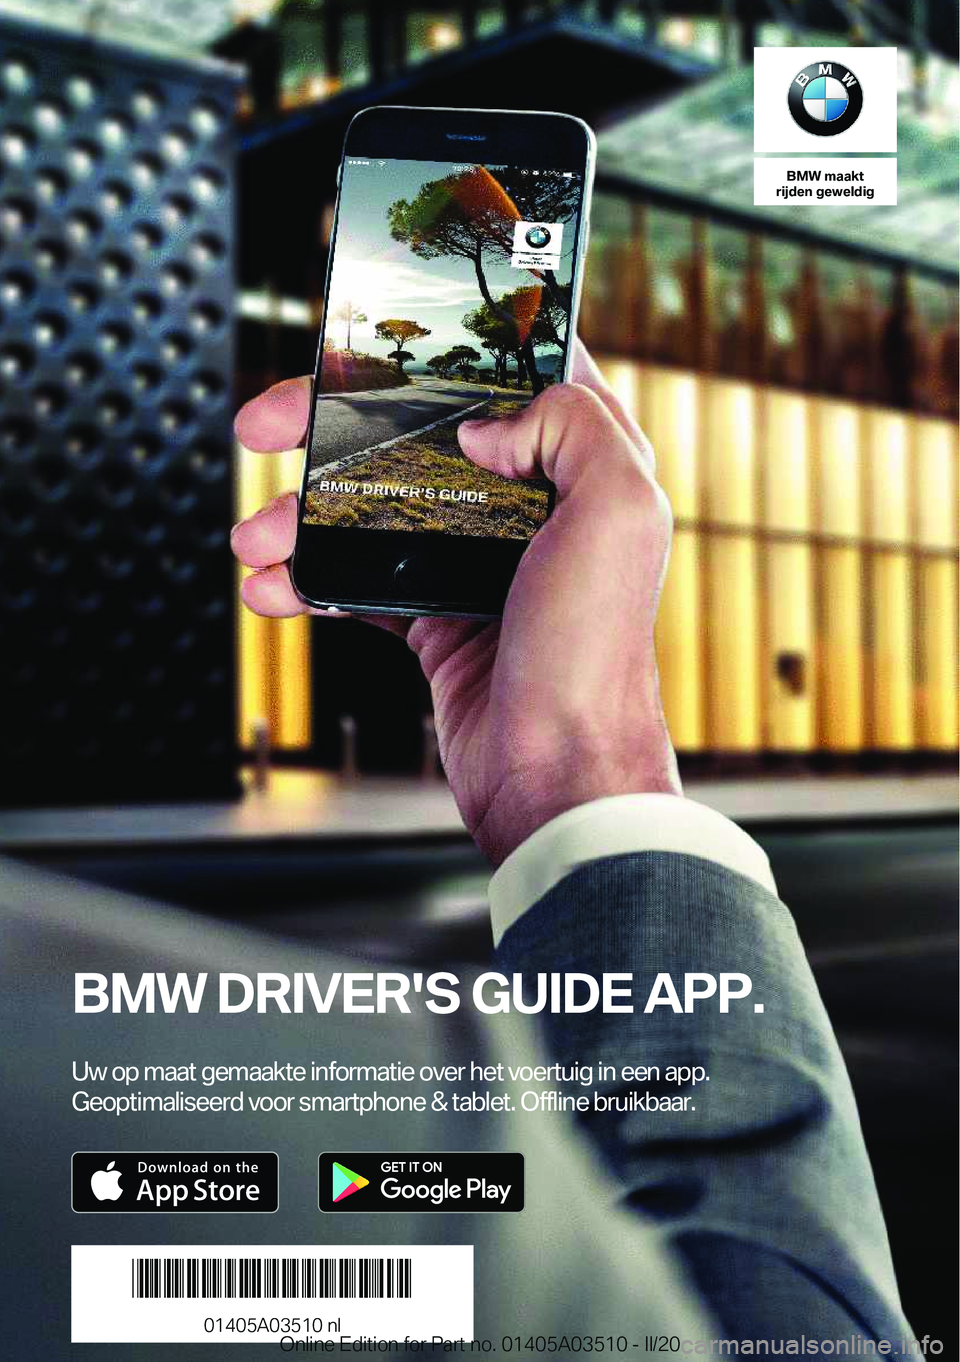 BMW X3 2020  Instructieboekjes (in Dutch) �B�M�W��m�a�a�k�t
�r�i�j�d�e�n��g�e�w�e�l�d�i�g
�B�M�W��D�R�I�V�E�R�'�S��G�U�I�D�E��A�P�P�.
�U�w��o�p��m�a�a�t��g�e�m�a�a�k�t�e��i�n�f�o�r�m�a�t�i�e��o�v�e�r��h�e�t��v�o�e�r�t�u�i�g��